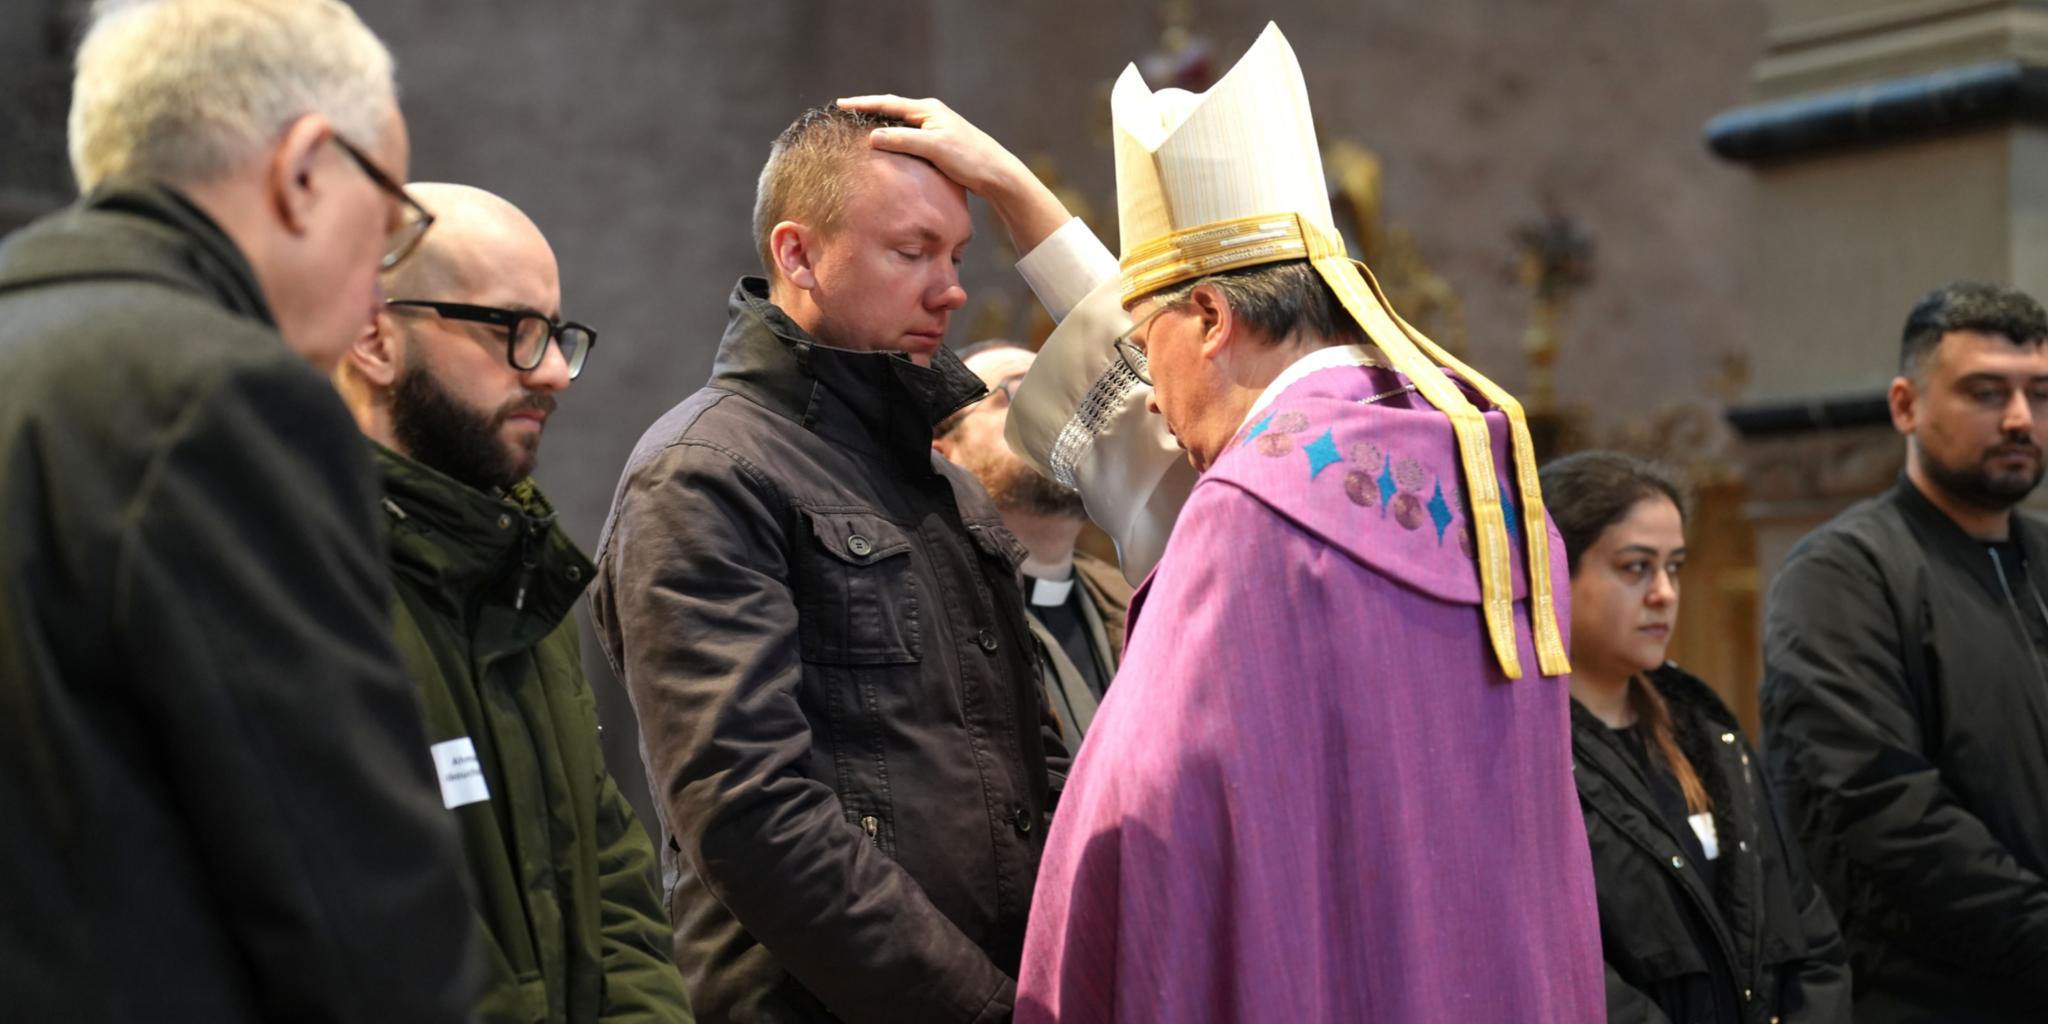 Nach der Zulassung zu den Sakramenten spricht der Bischof ein Segensbebet und legt im Anschluss jeder und jedem die Hand auf als Zeichen des Segens und der Zuwendung.